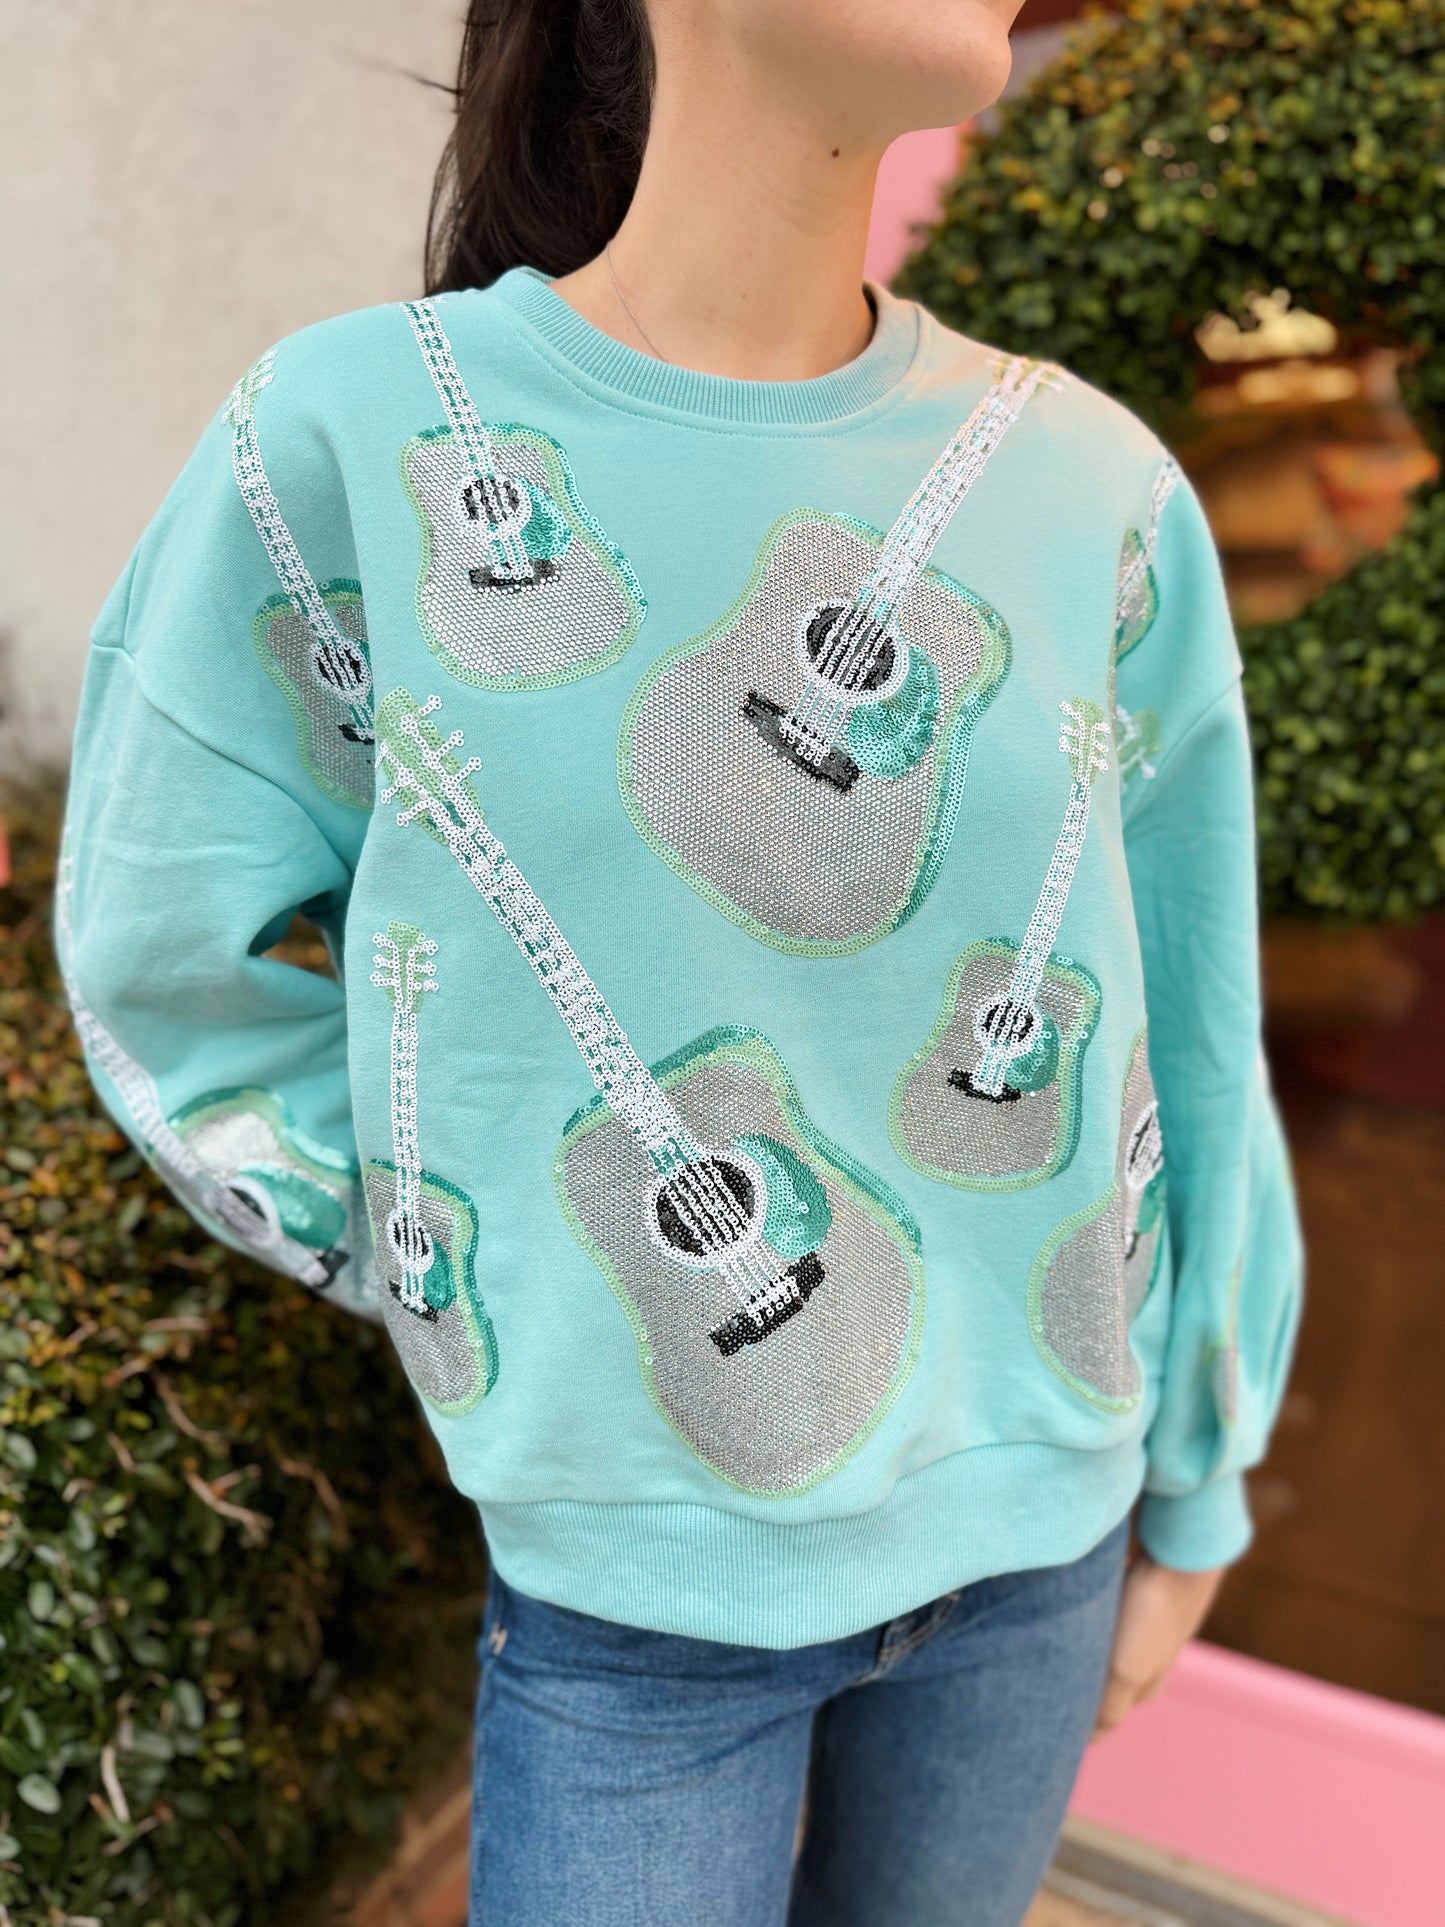 Guitar Sweatshirt by Queen of Sparkles